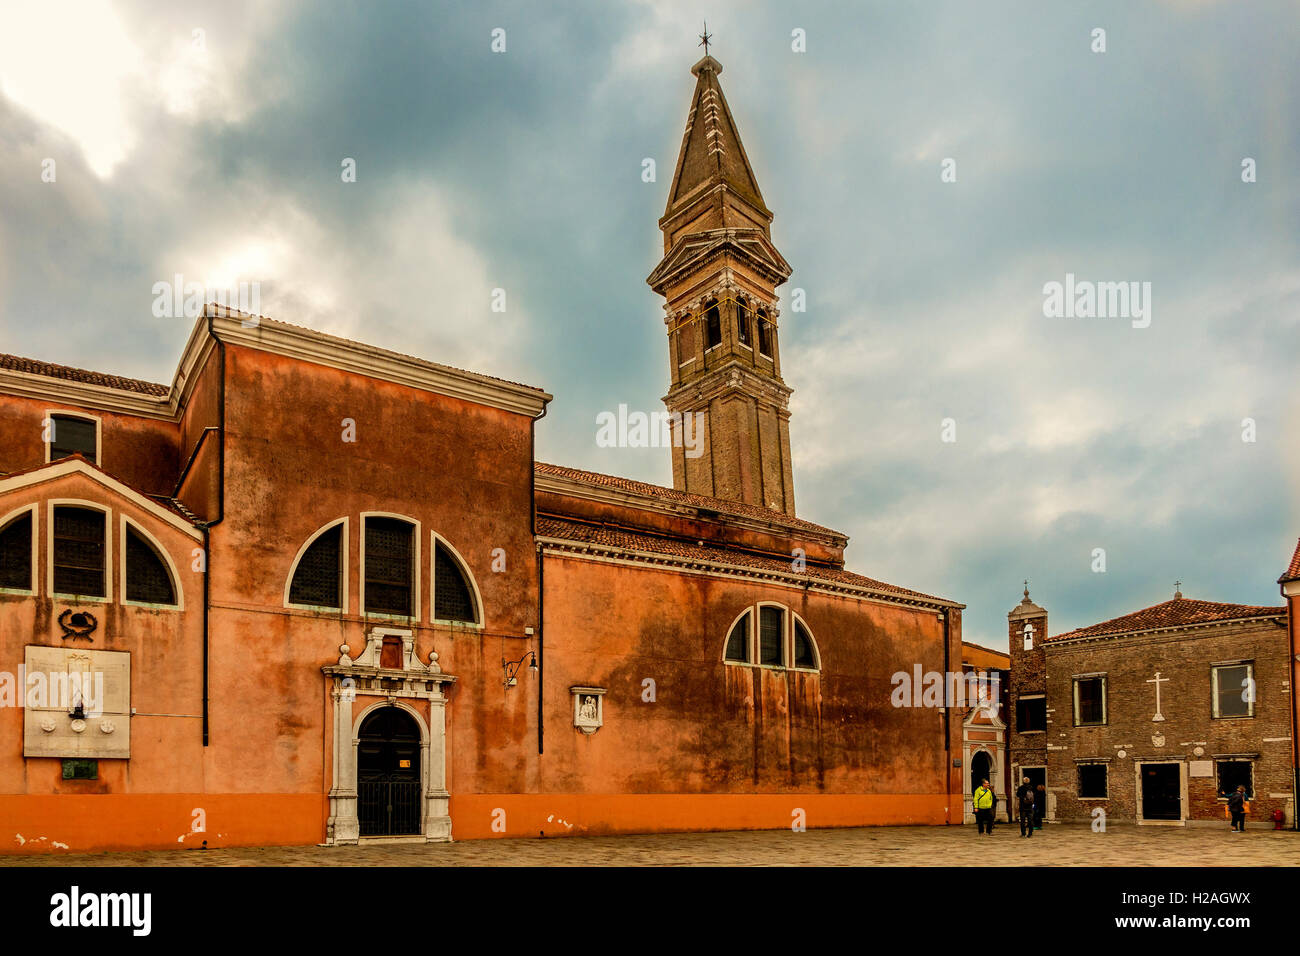 La place de l'église de l'Île Burano Italie Venise Banque D'Images